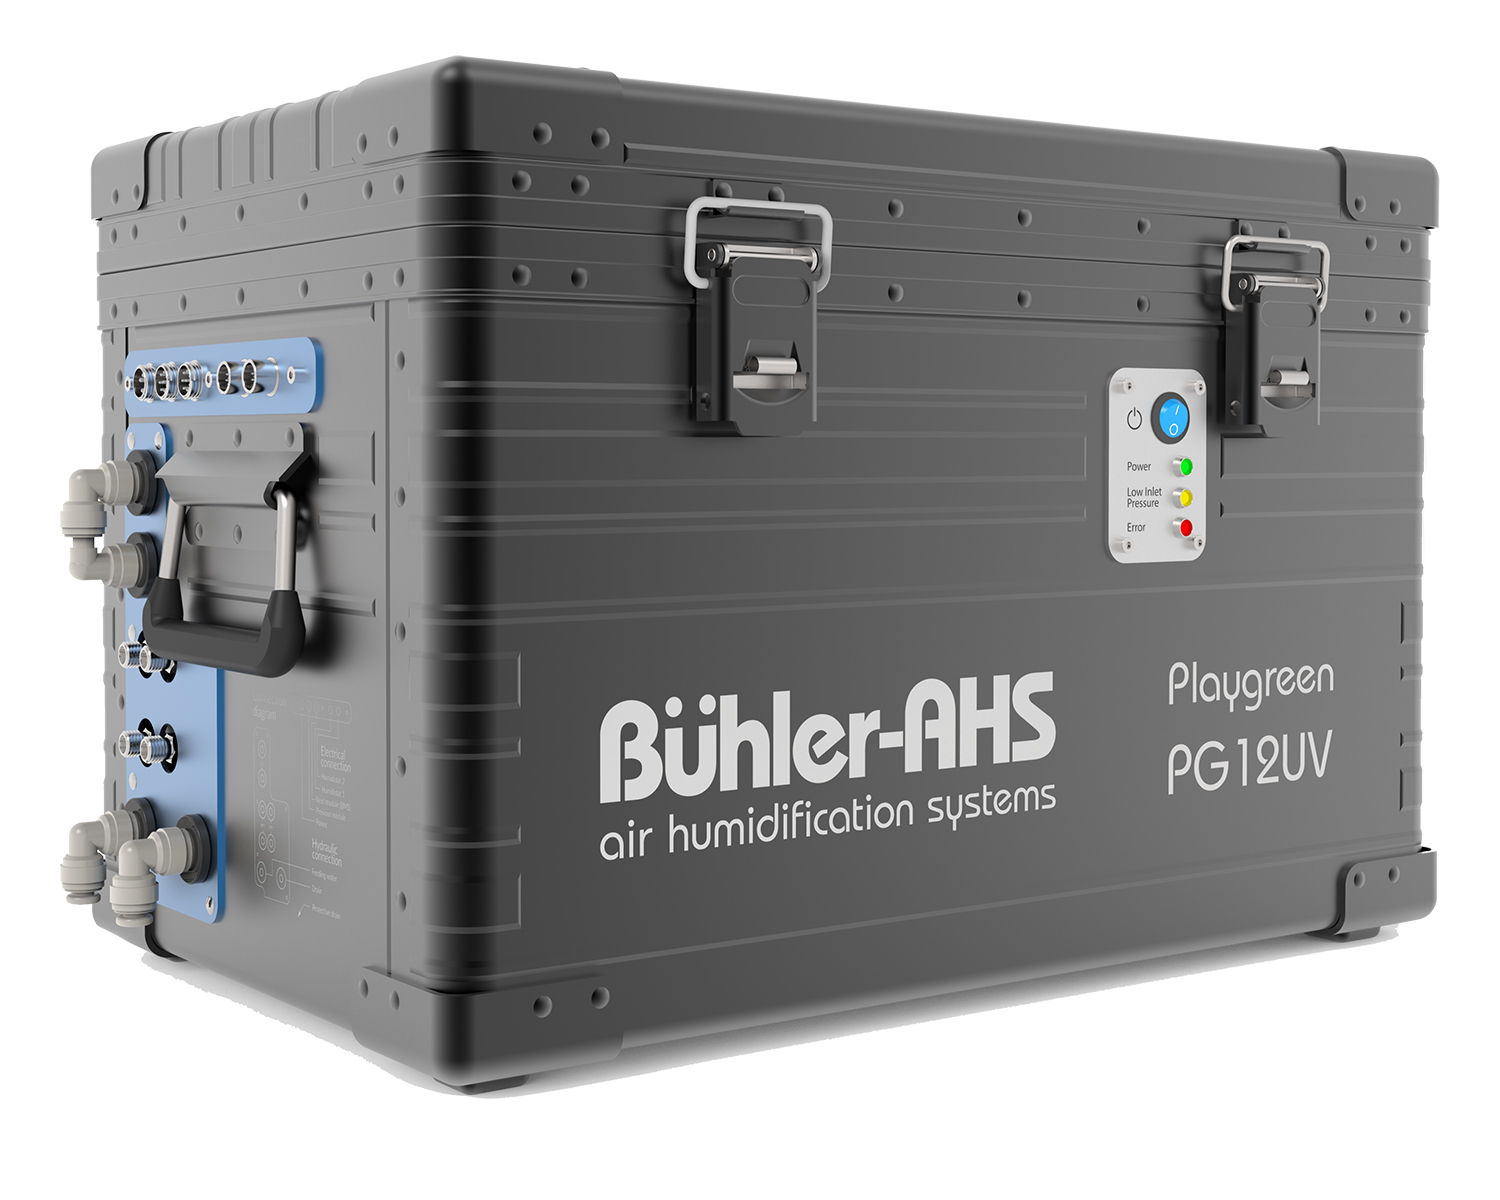 Центральный модуль система увлажнения Buhler-AHS PG12UV Playgreen 12